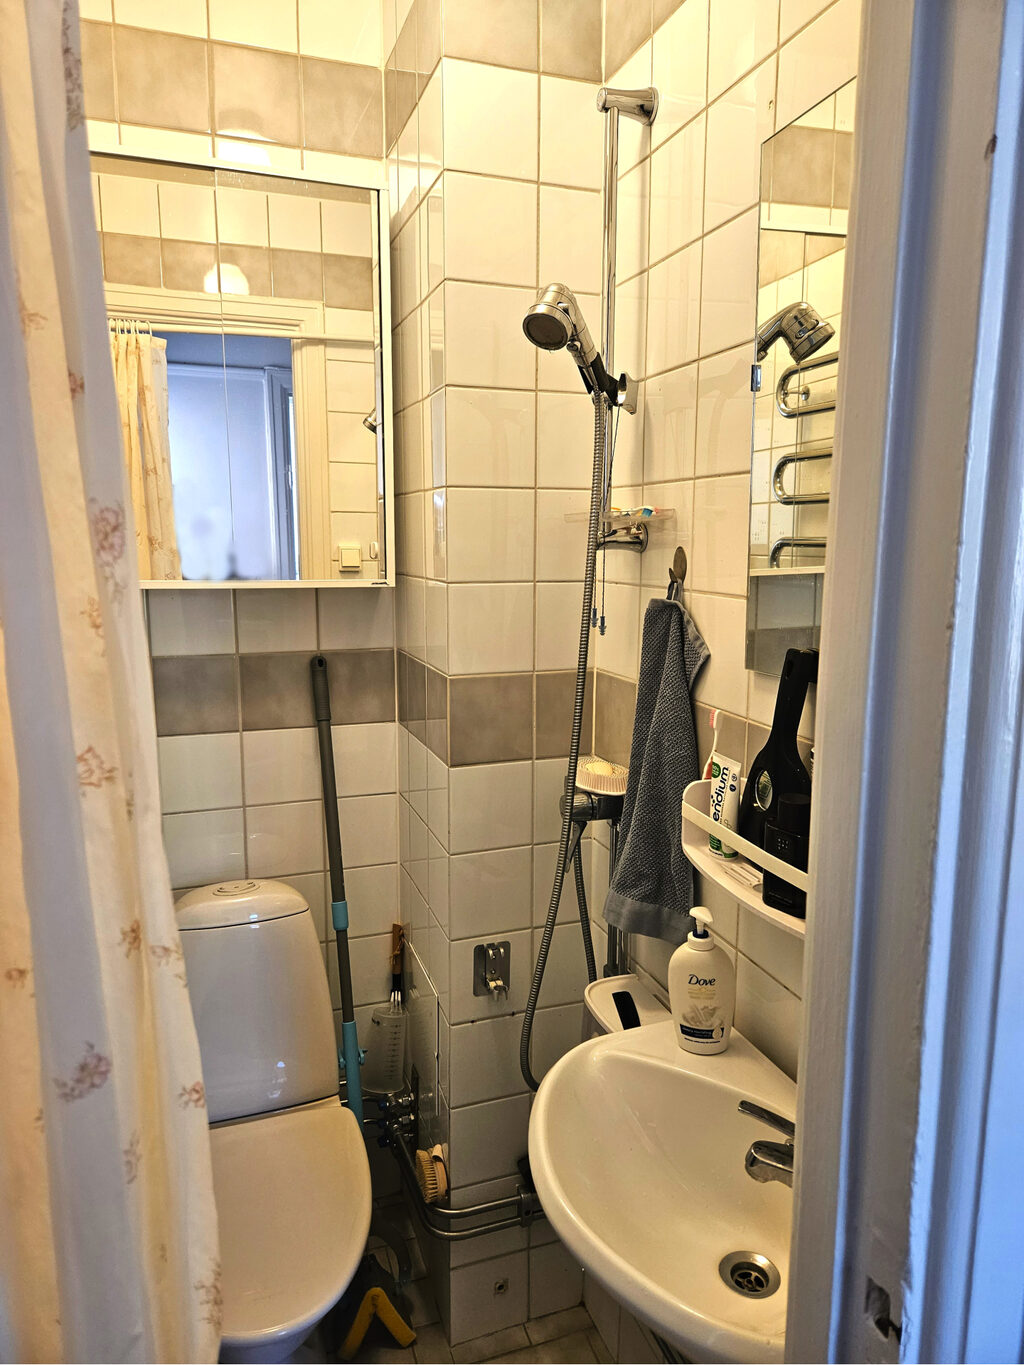 Lägenhetsbyte - Kungstensgatan, 113 57 Stockholm